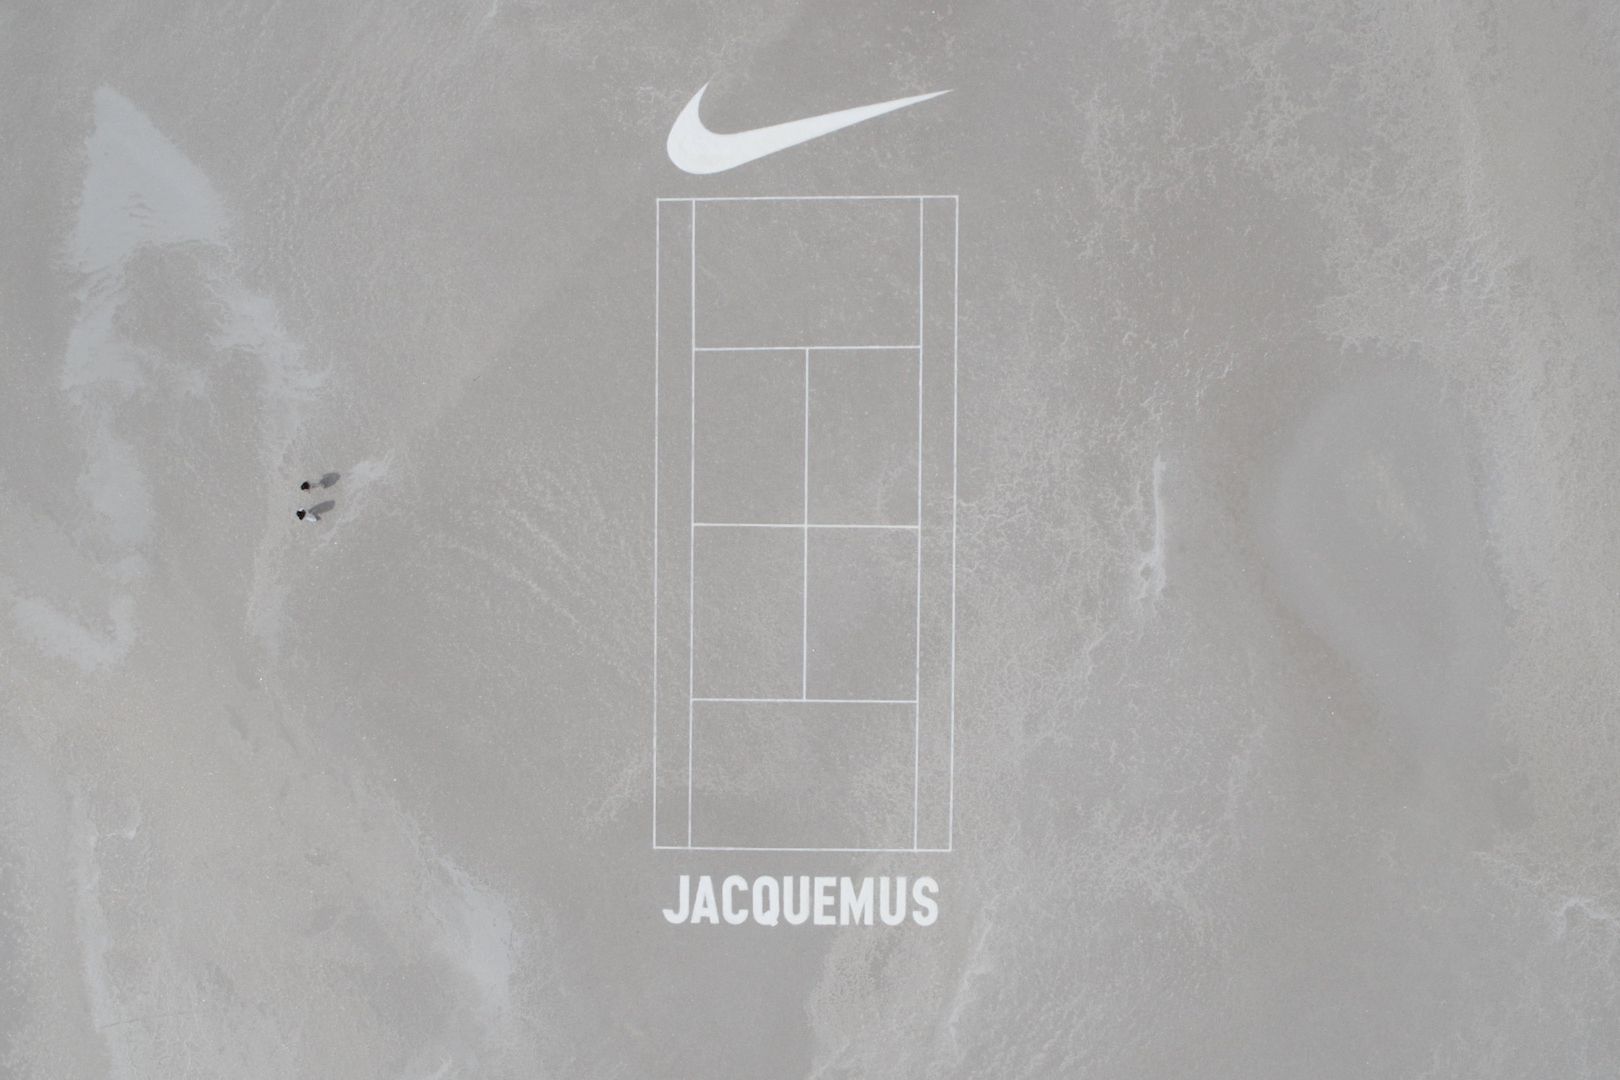 Jacquemus x Nike Air Humara 